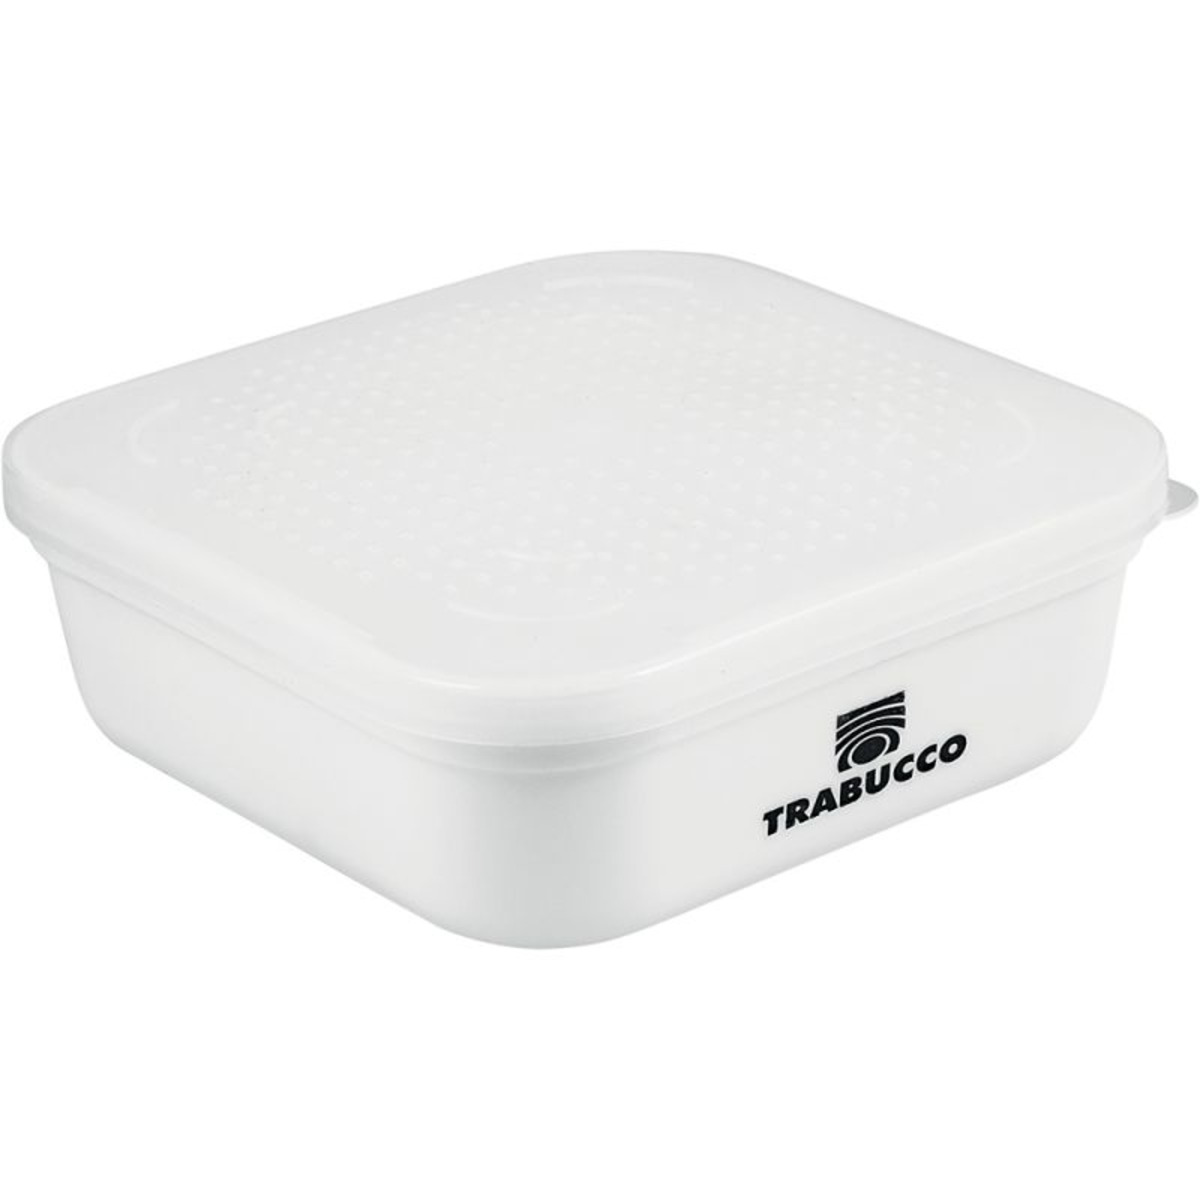 Trabucco Bait Box White - 500 g 